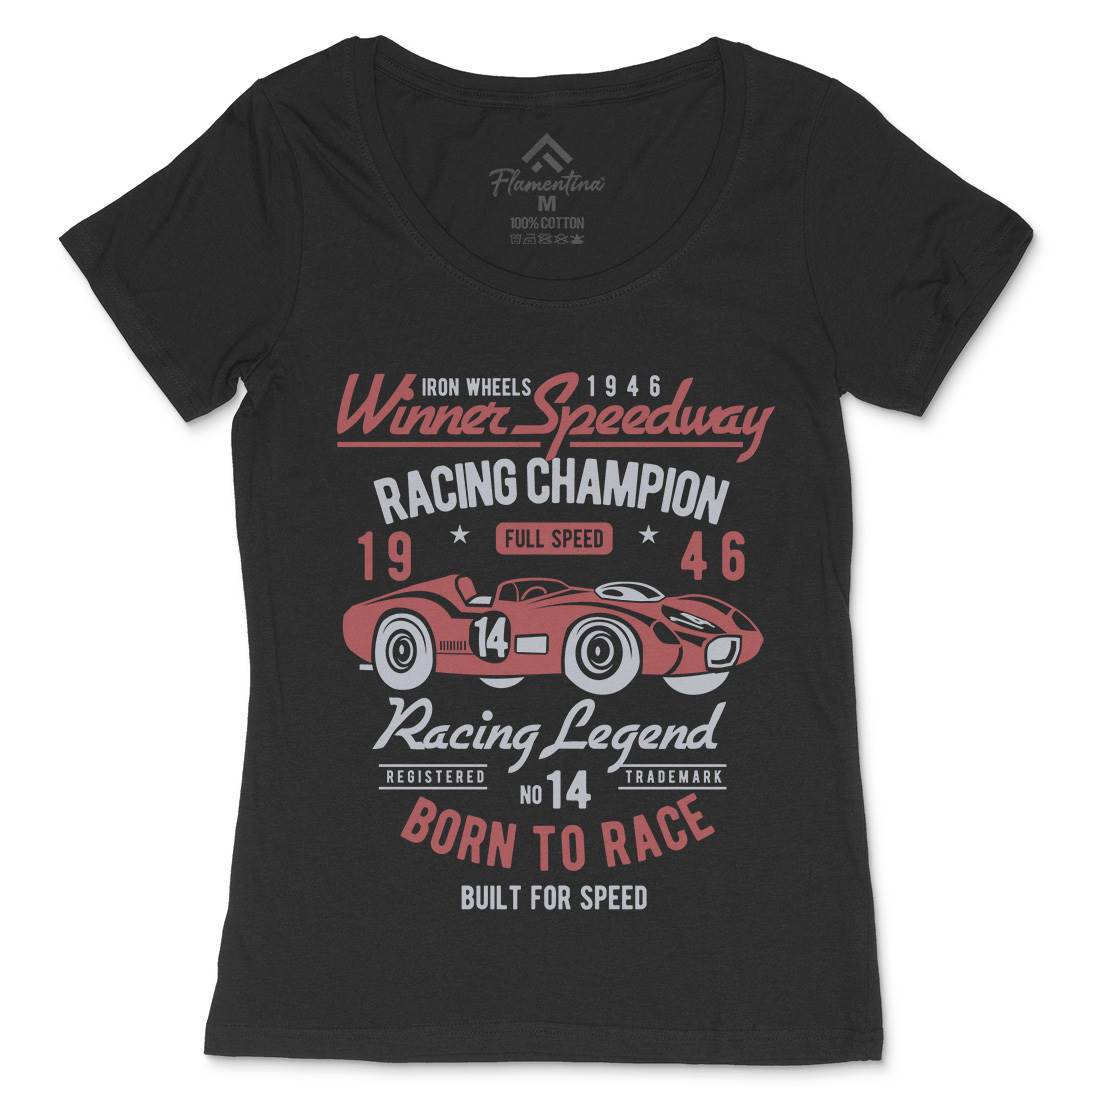 Winner Speedway Womens Scoop Neck T-Shirt Cars B476